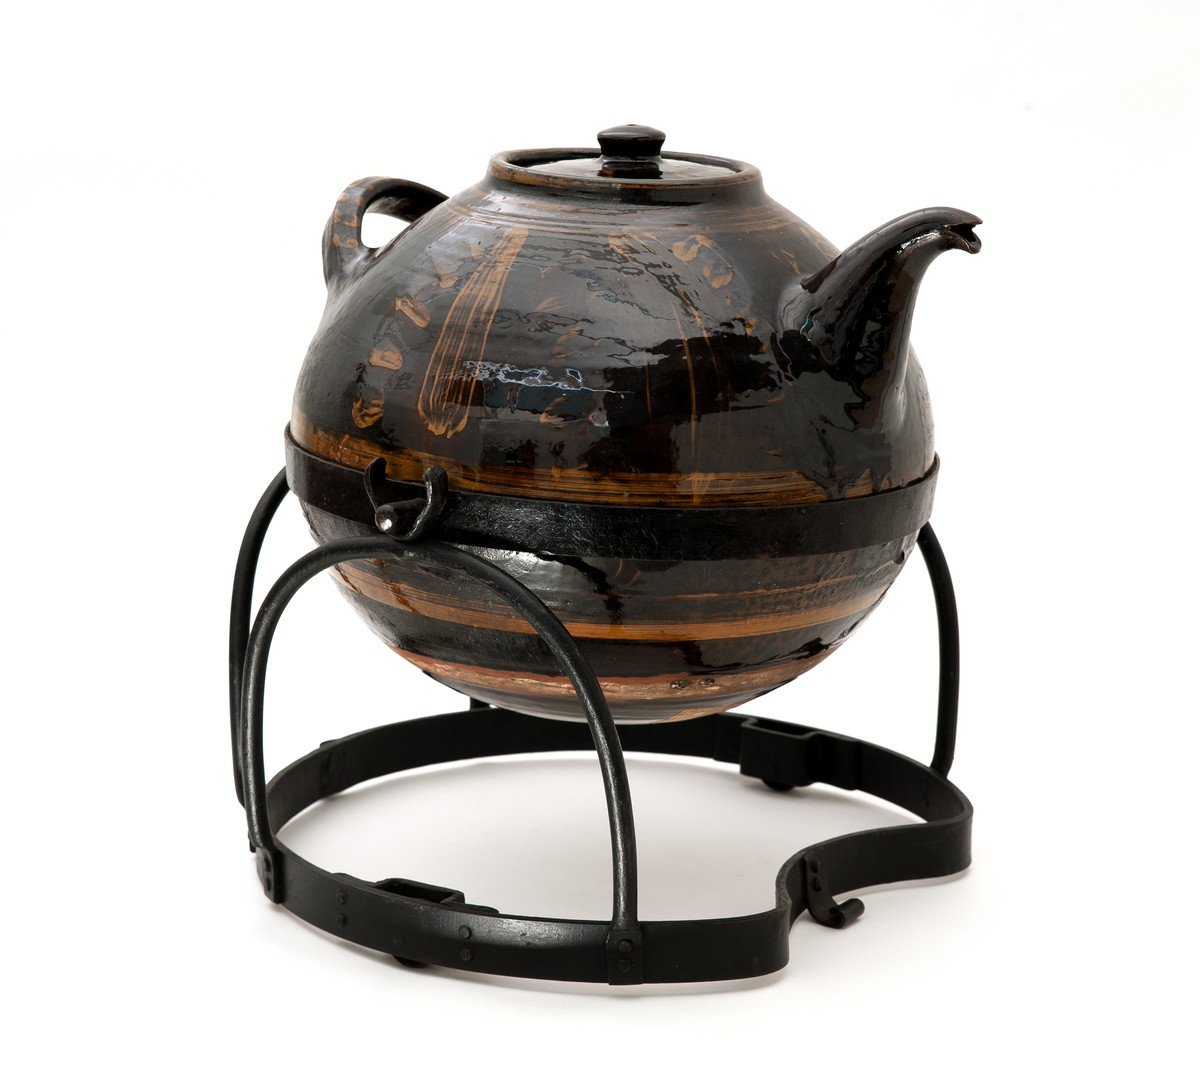 40. Giant Teapot